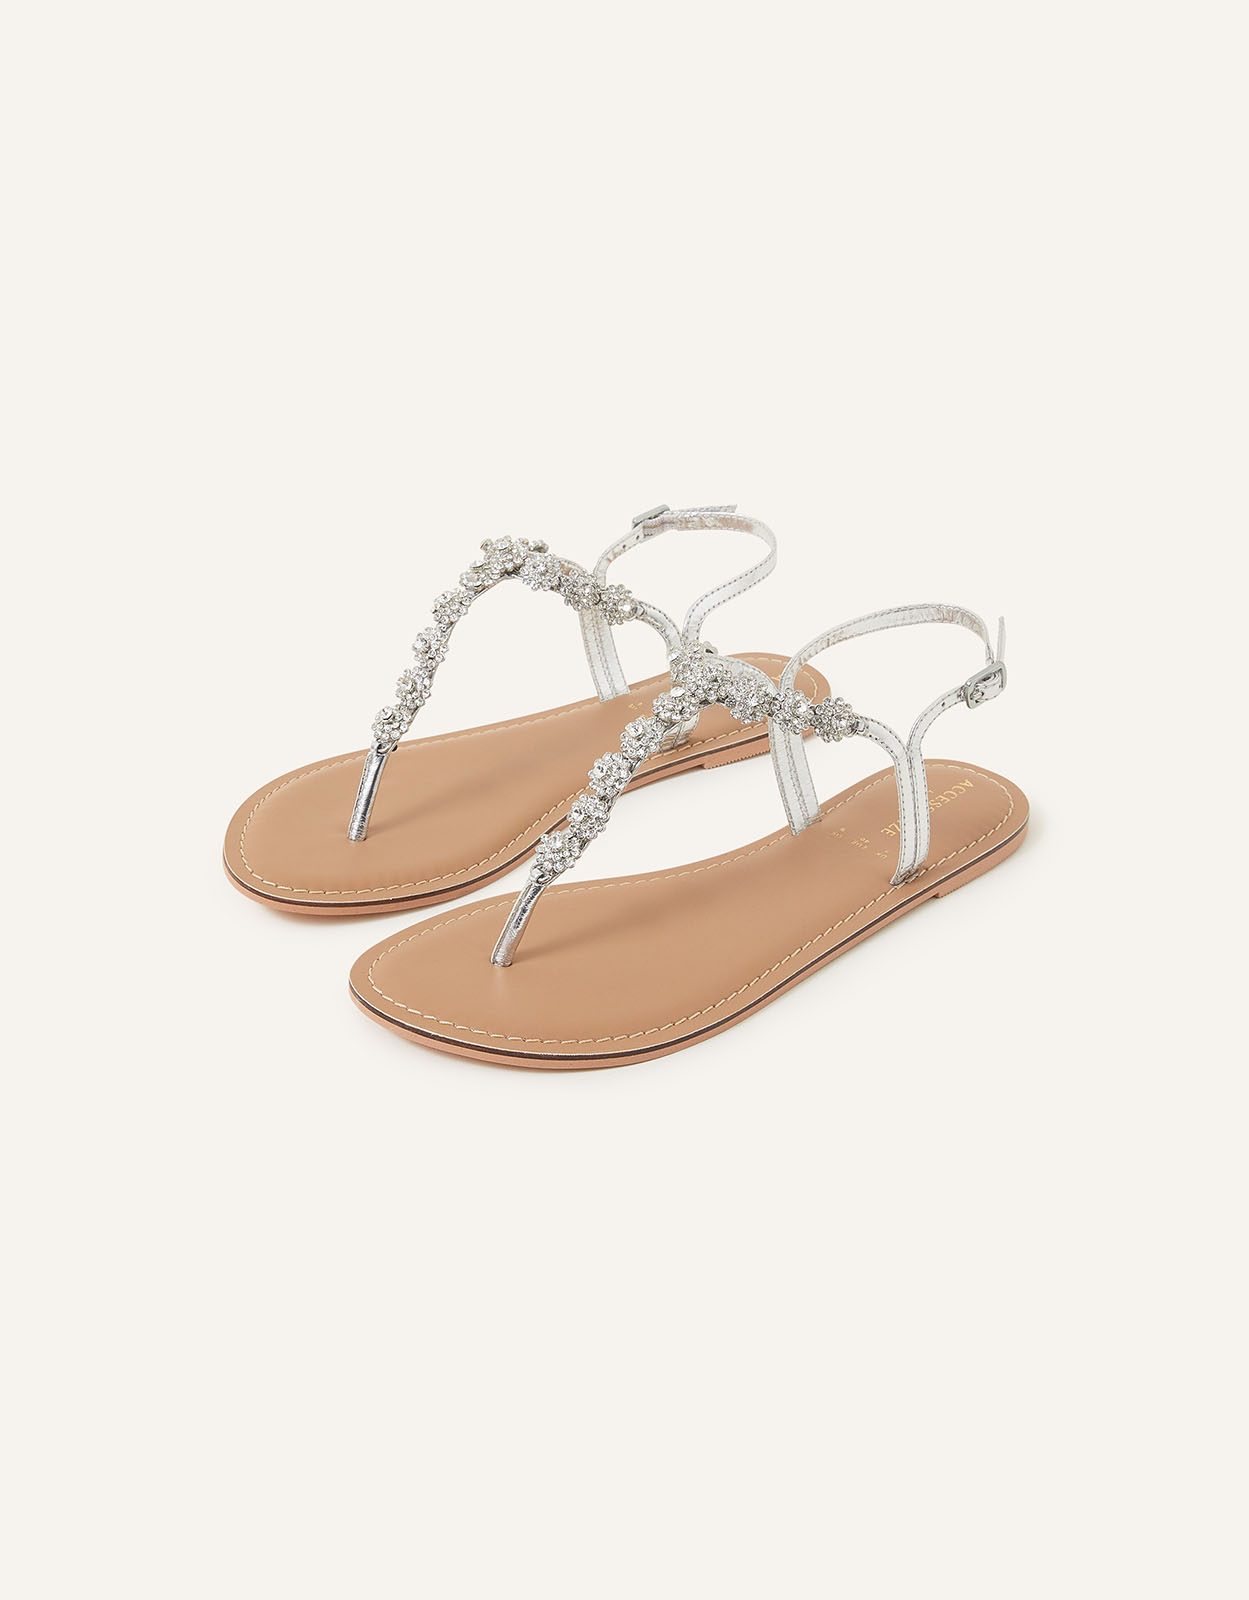 Accessorize Women's Reno Sparkle Diamante Sandals Silver, Size: 41